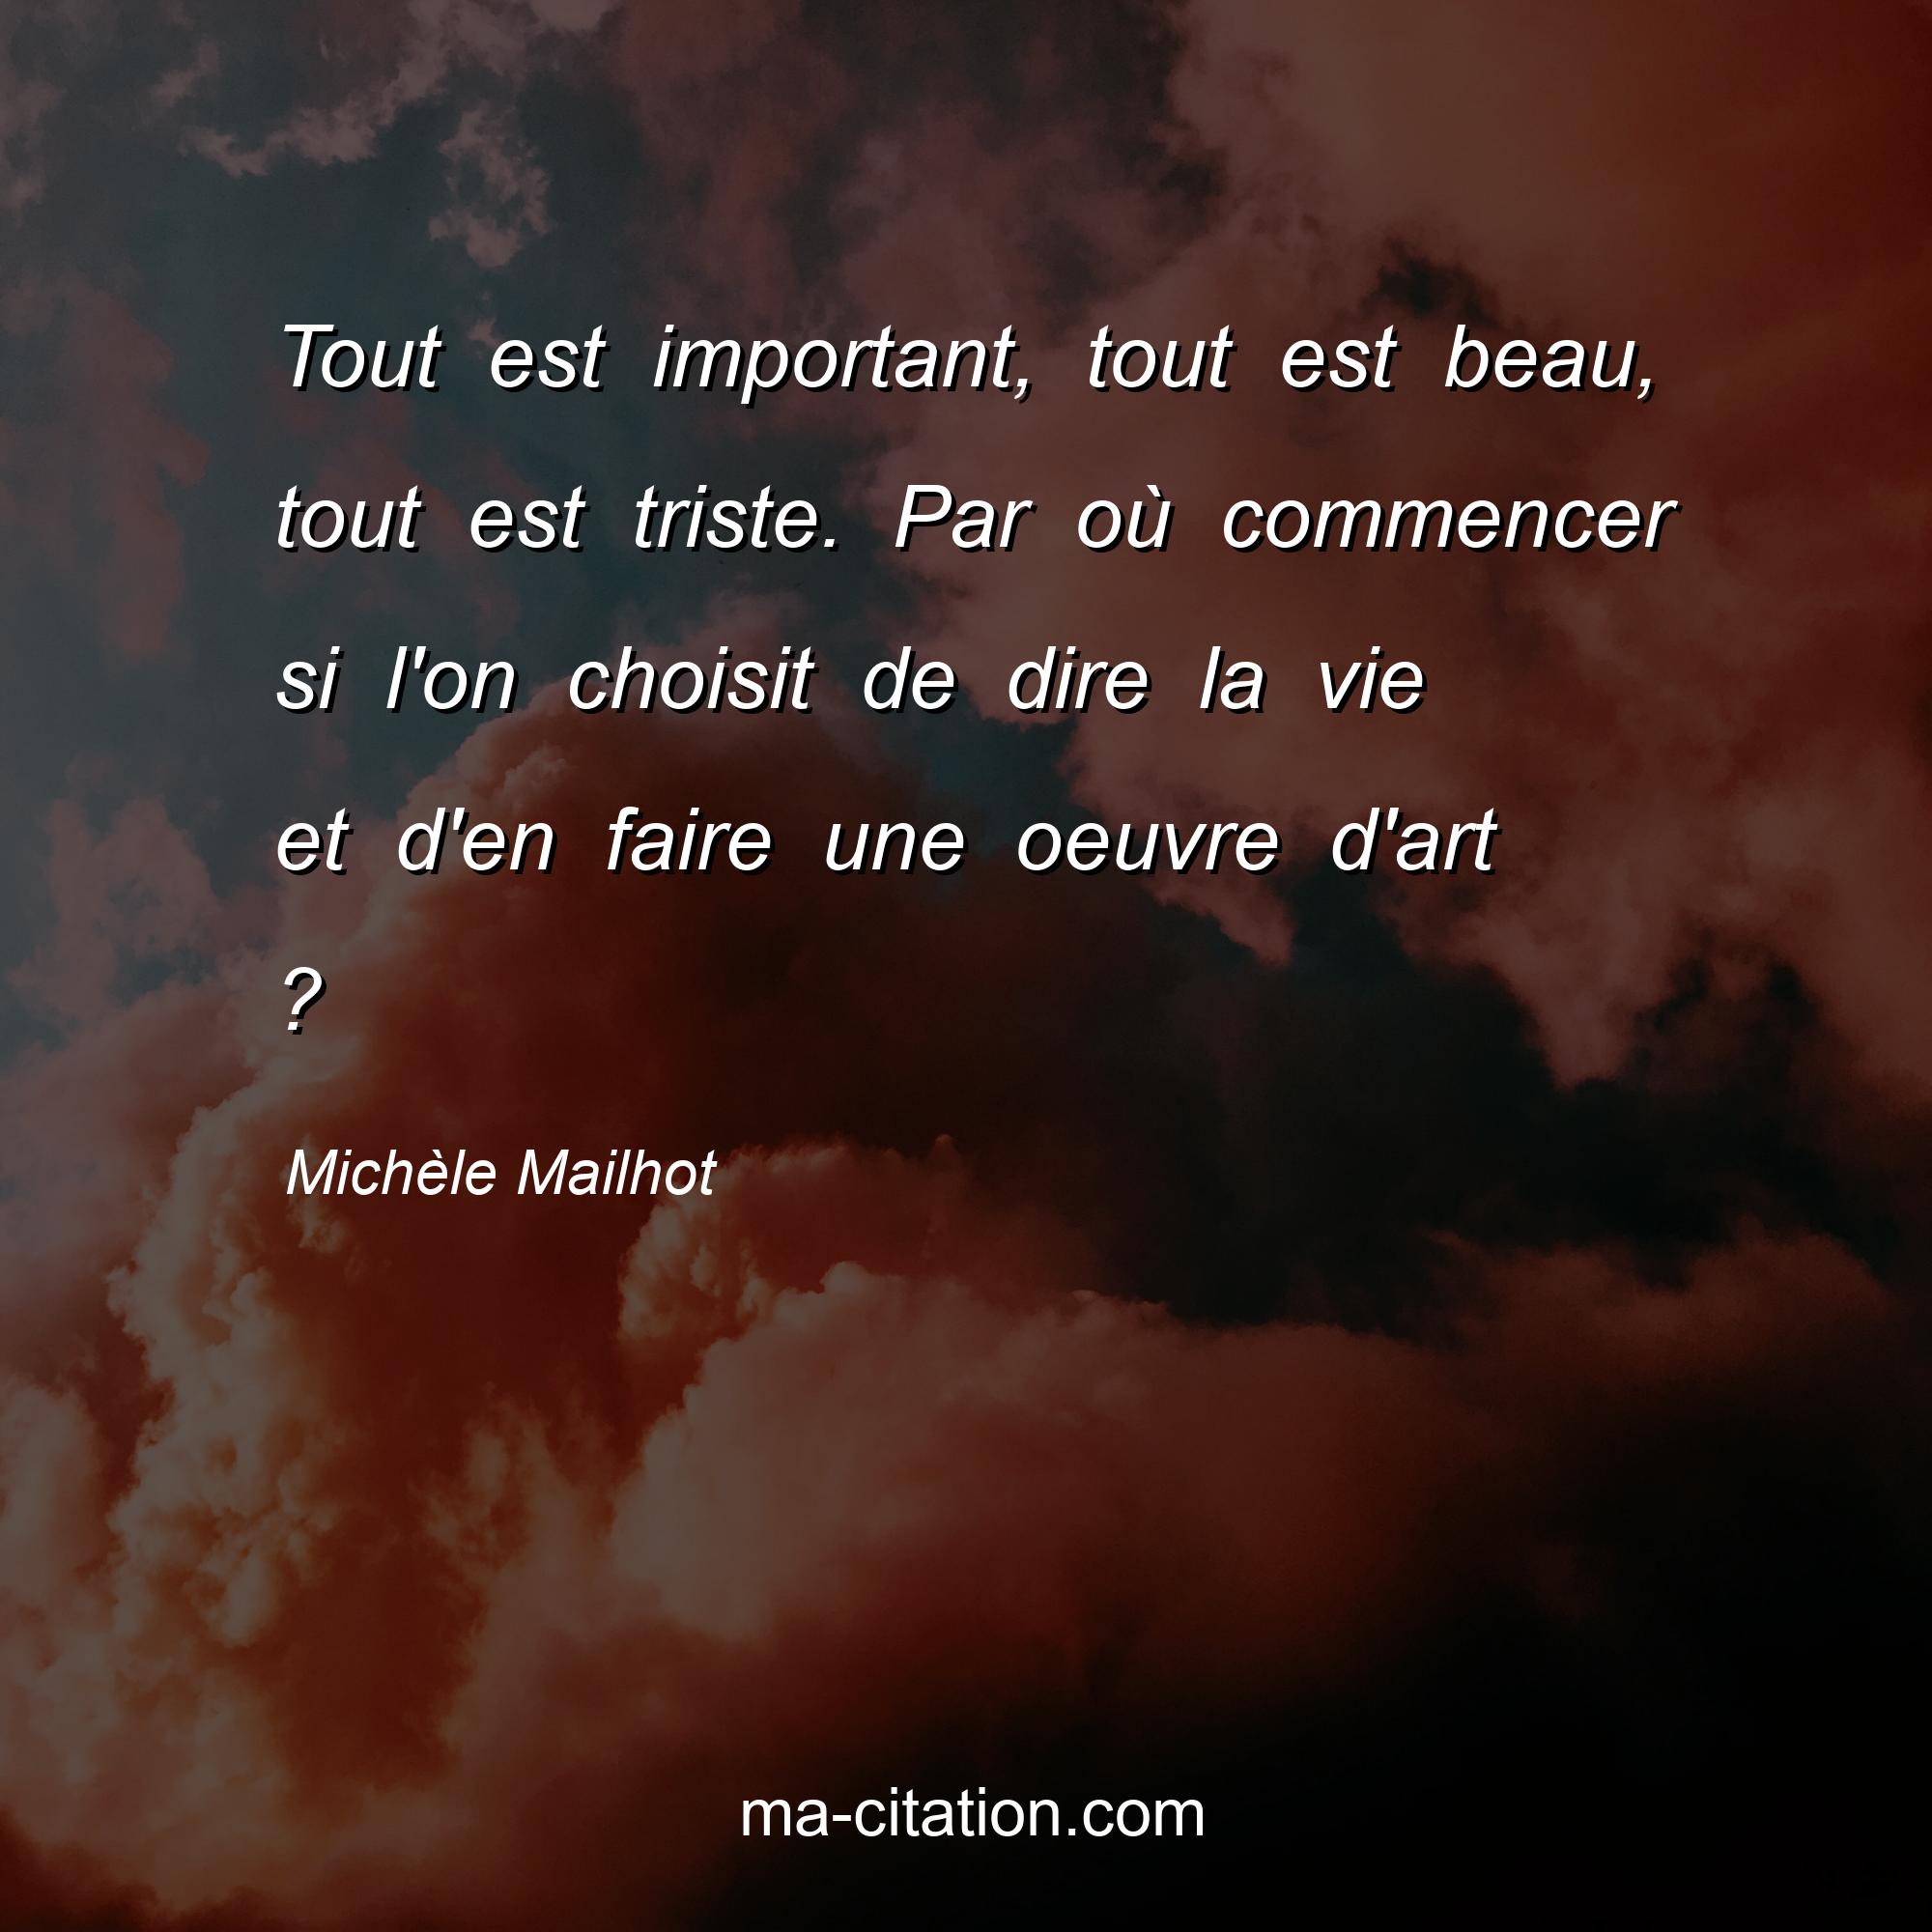 Michèle Mailhot : Tout est important, tout est beau, tout est triste. Par où commencer si l'on choisit de dire la vie et d'en faire une oeuvre d'art ?